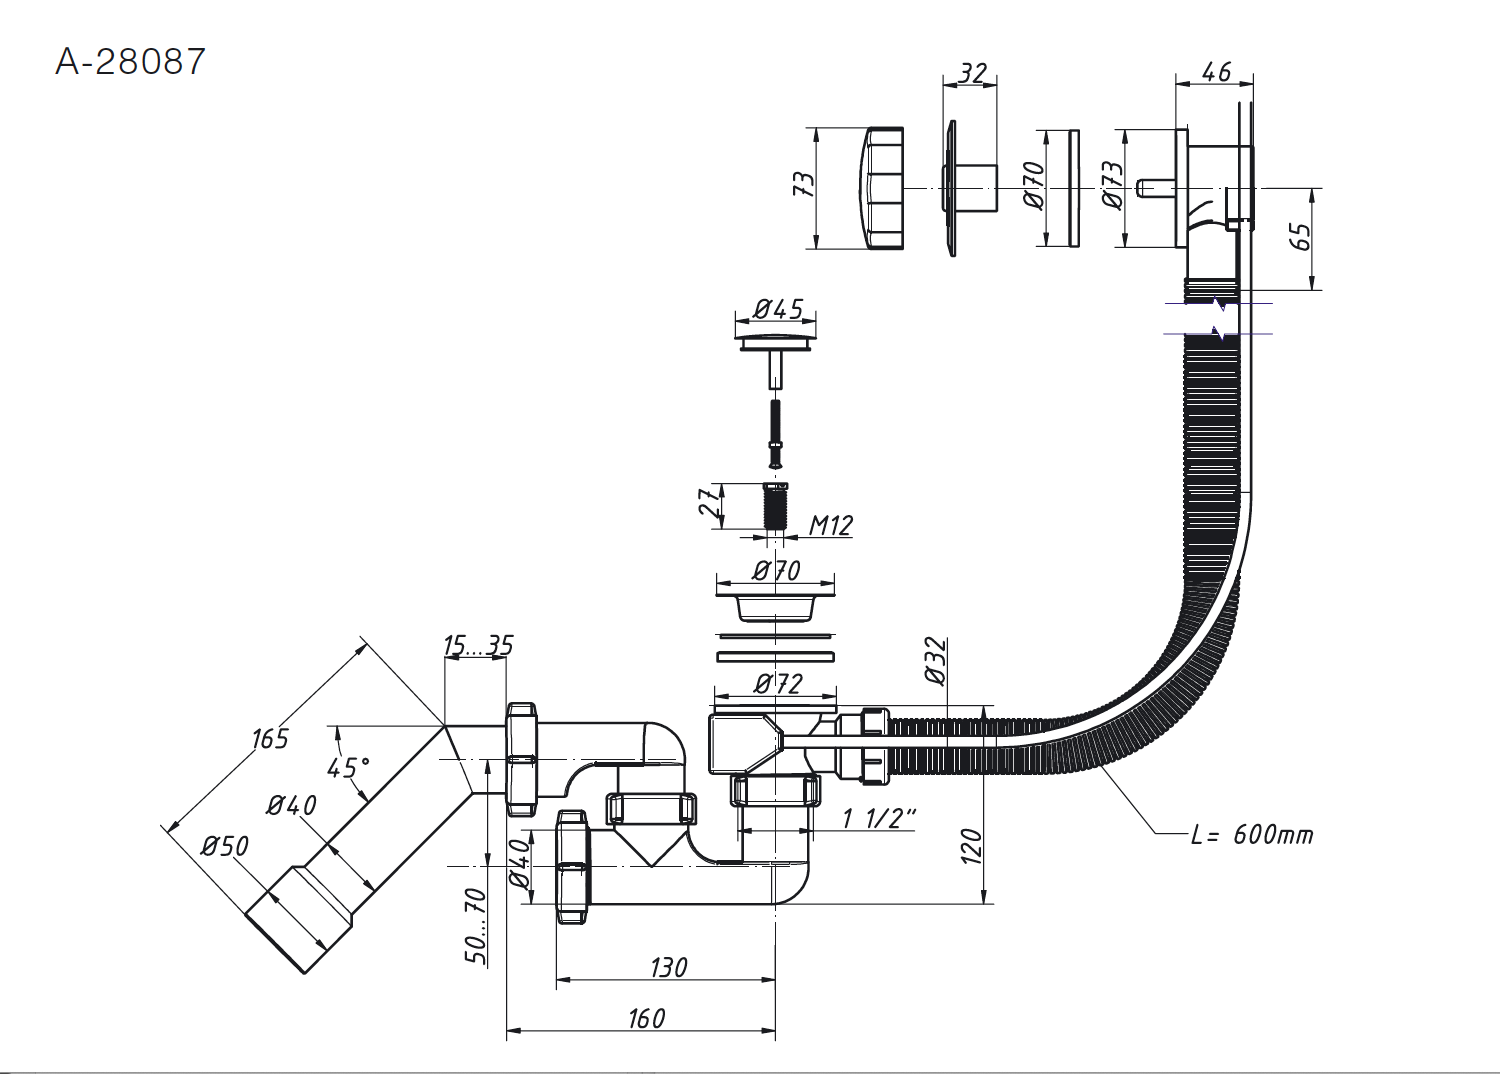 Badewannensiphon 1 1/2", verstellbar, halbautomatisch, mit Überlauf und Adapterrohr 45°